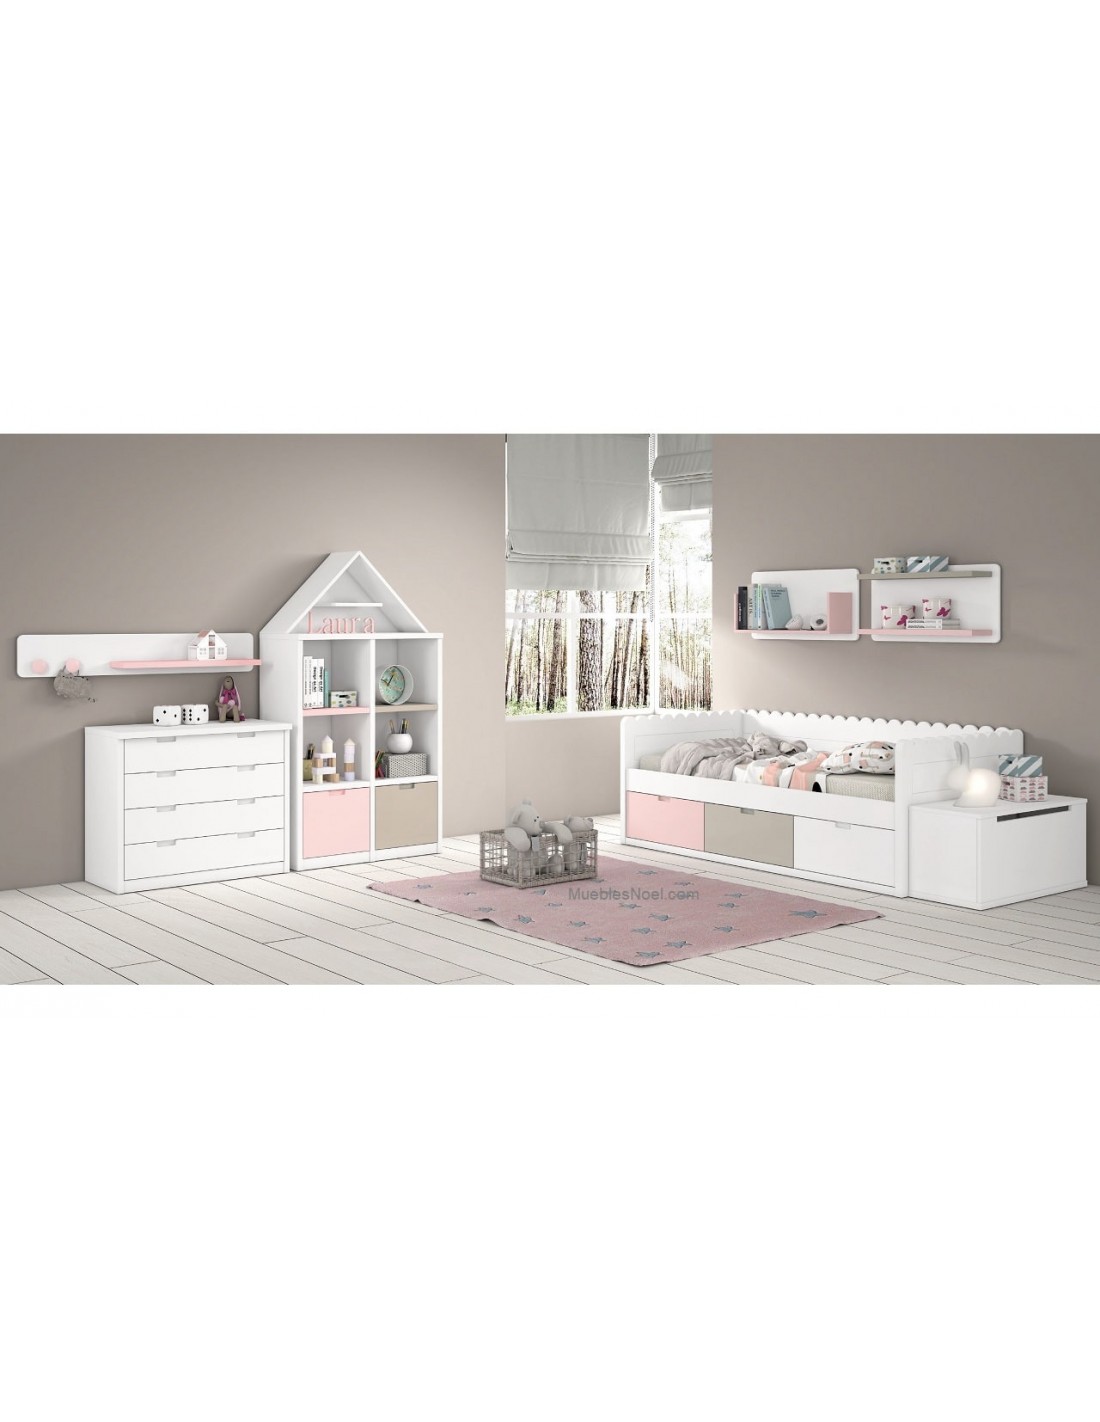 Dormitorio infantil lacado en blanco modelo Laura de la colección Ondas con cama nido con cajones.